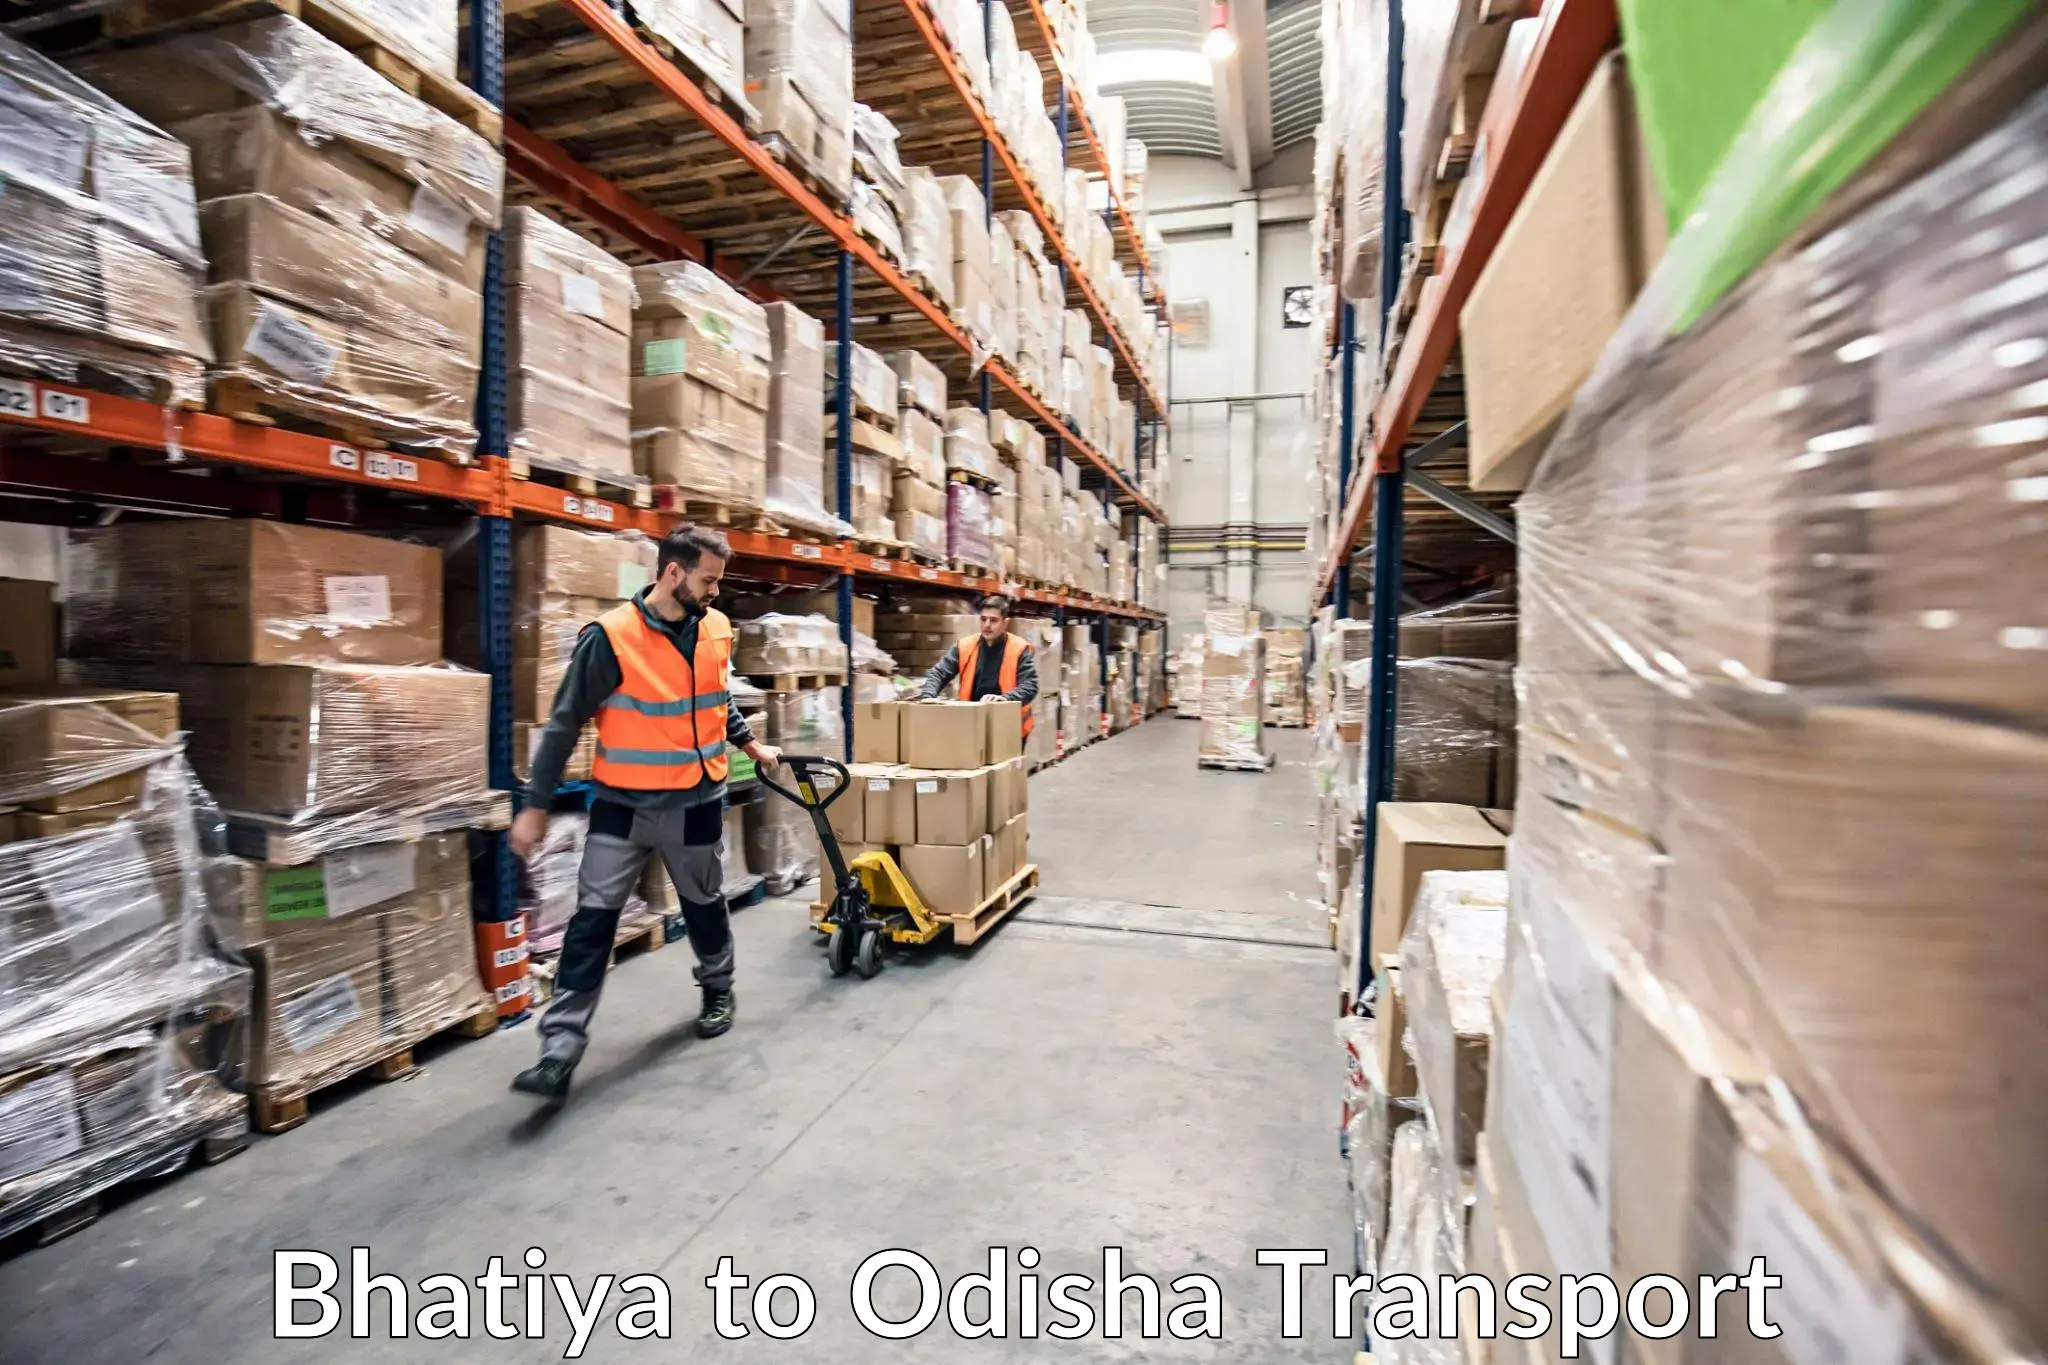 Furniture transport service Bhatiya to Kalahandi